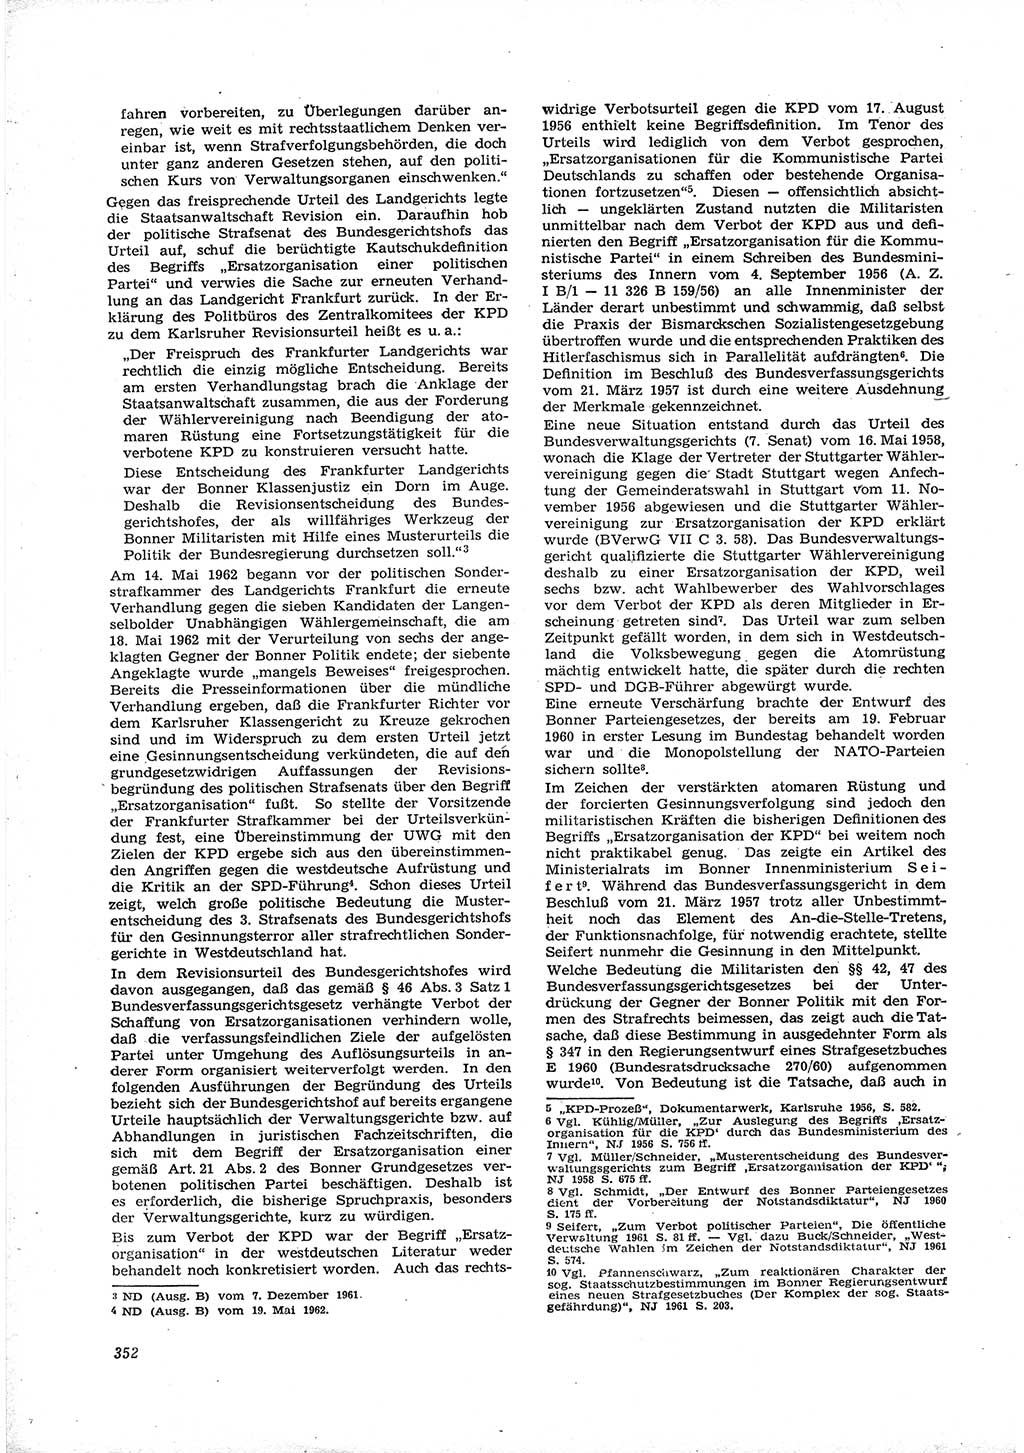 Neue Justiz (NJ), Zeitschrift für Recht und Rechtswissenschaft [Deutsche Demokratische Republik (DDR)], 16. Jahrgang 1962, Seite 352 (NJ DDR 1962, S. 352)